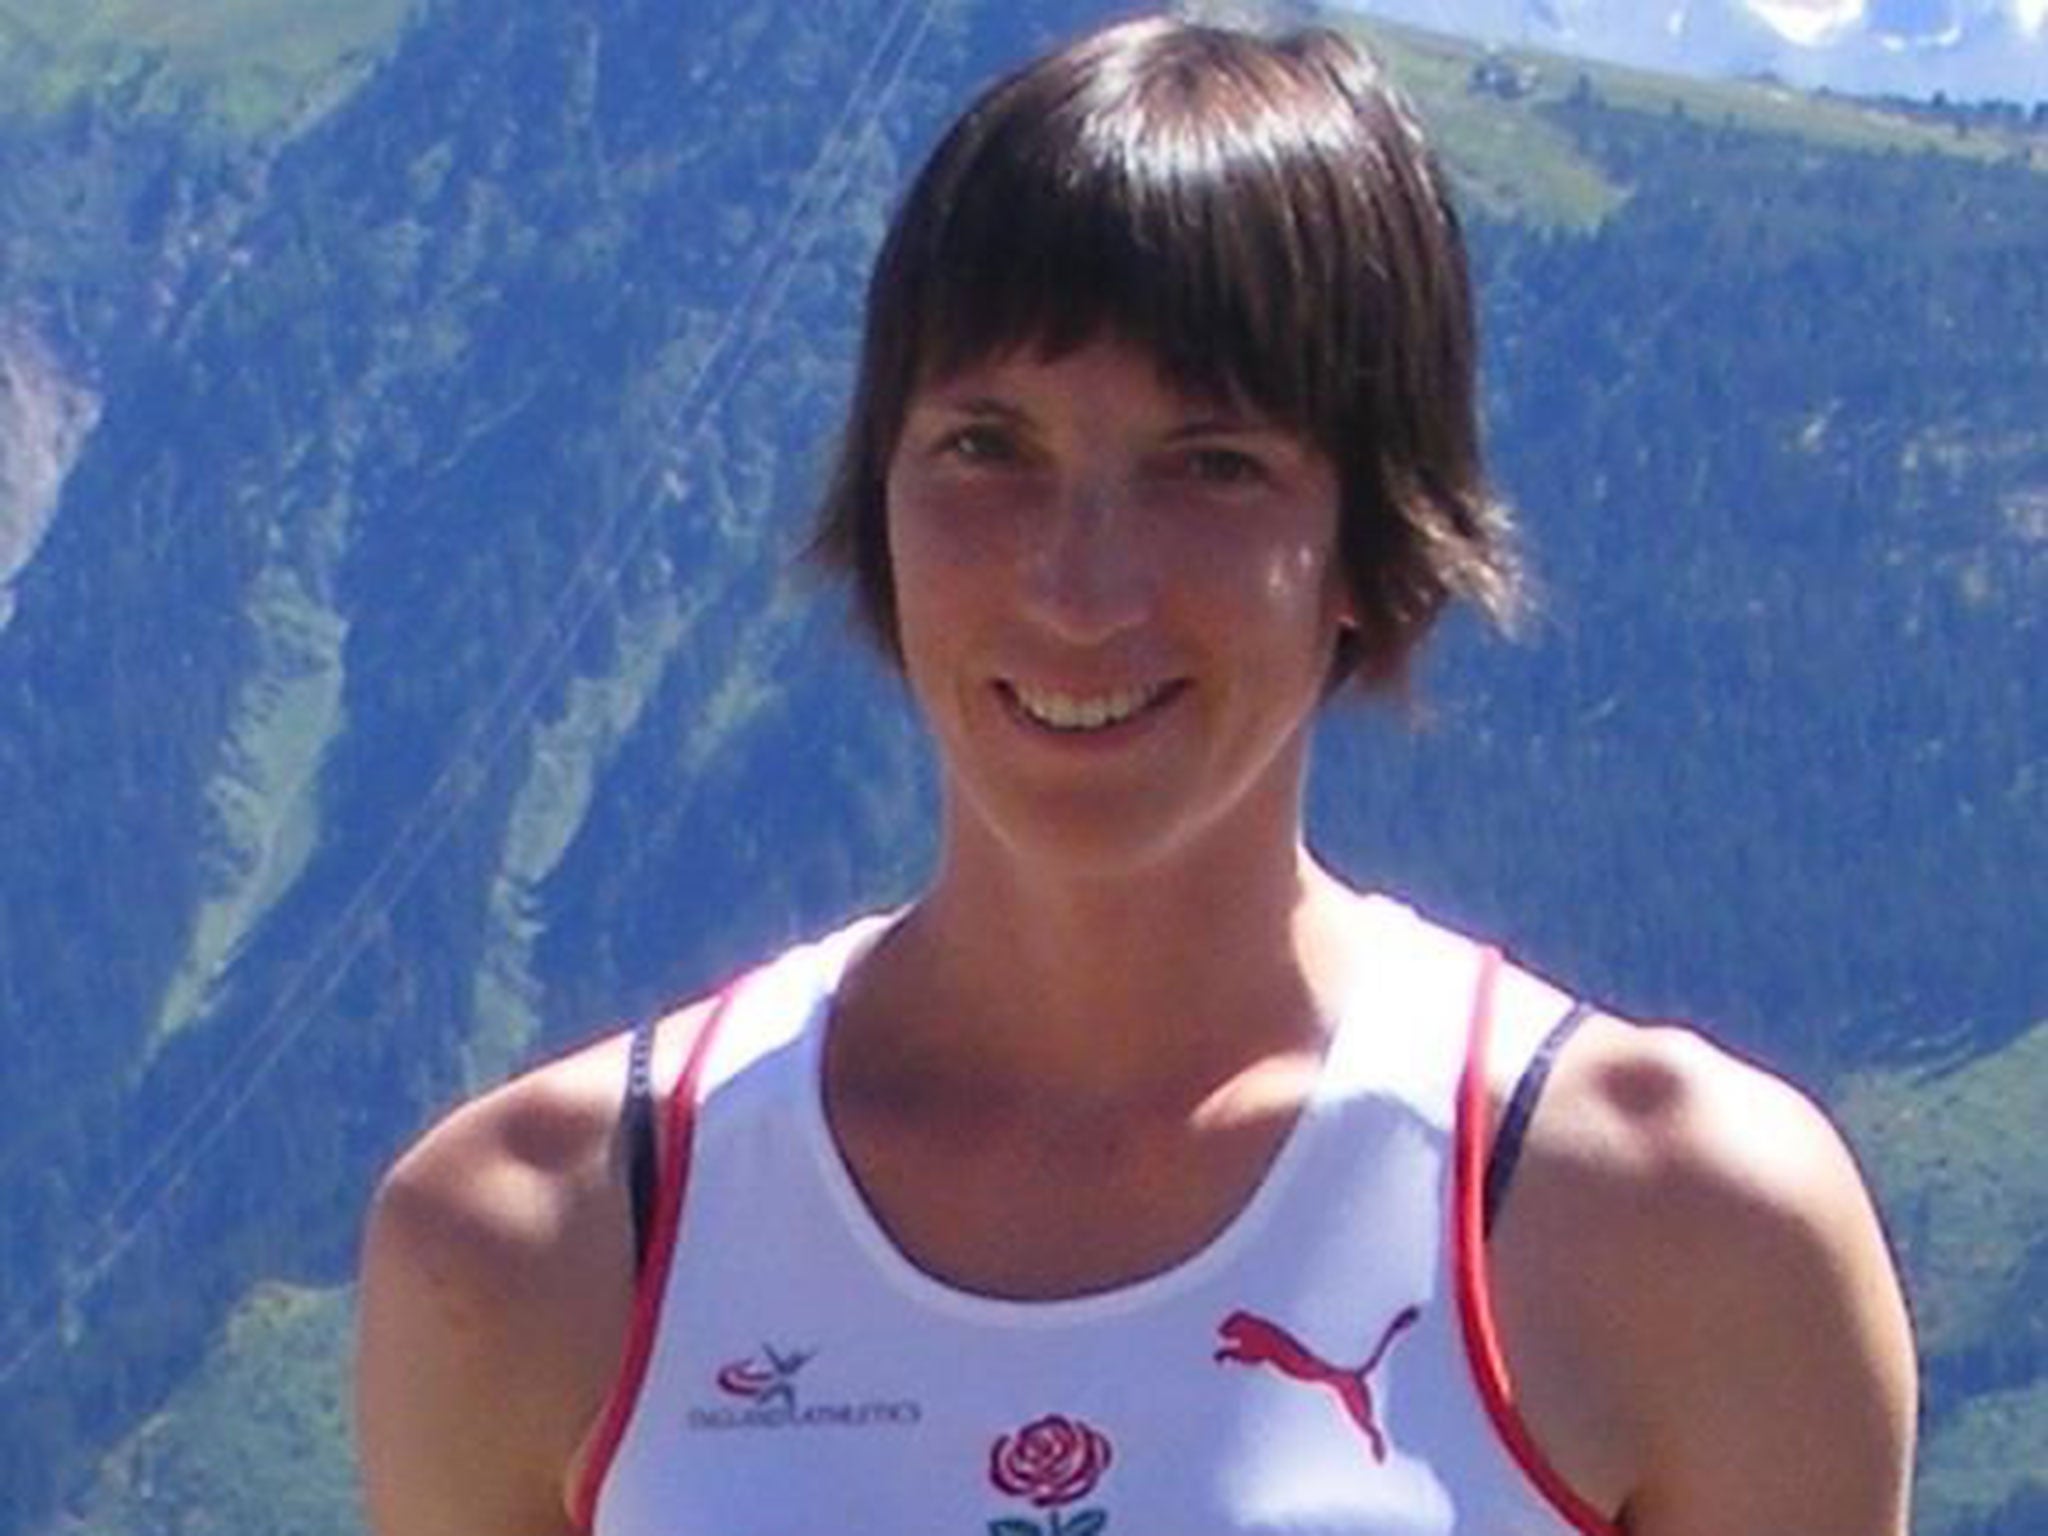 Lauren Jeska is a former champion fell runner